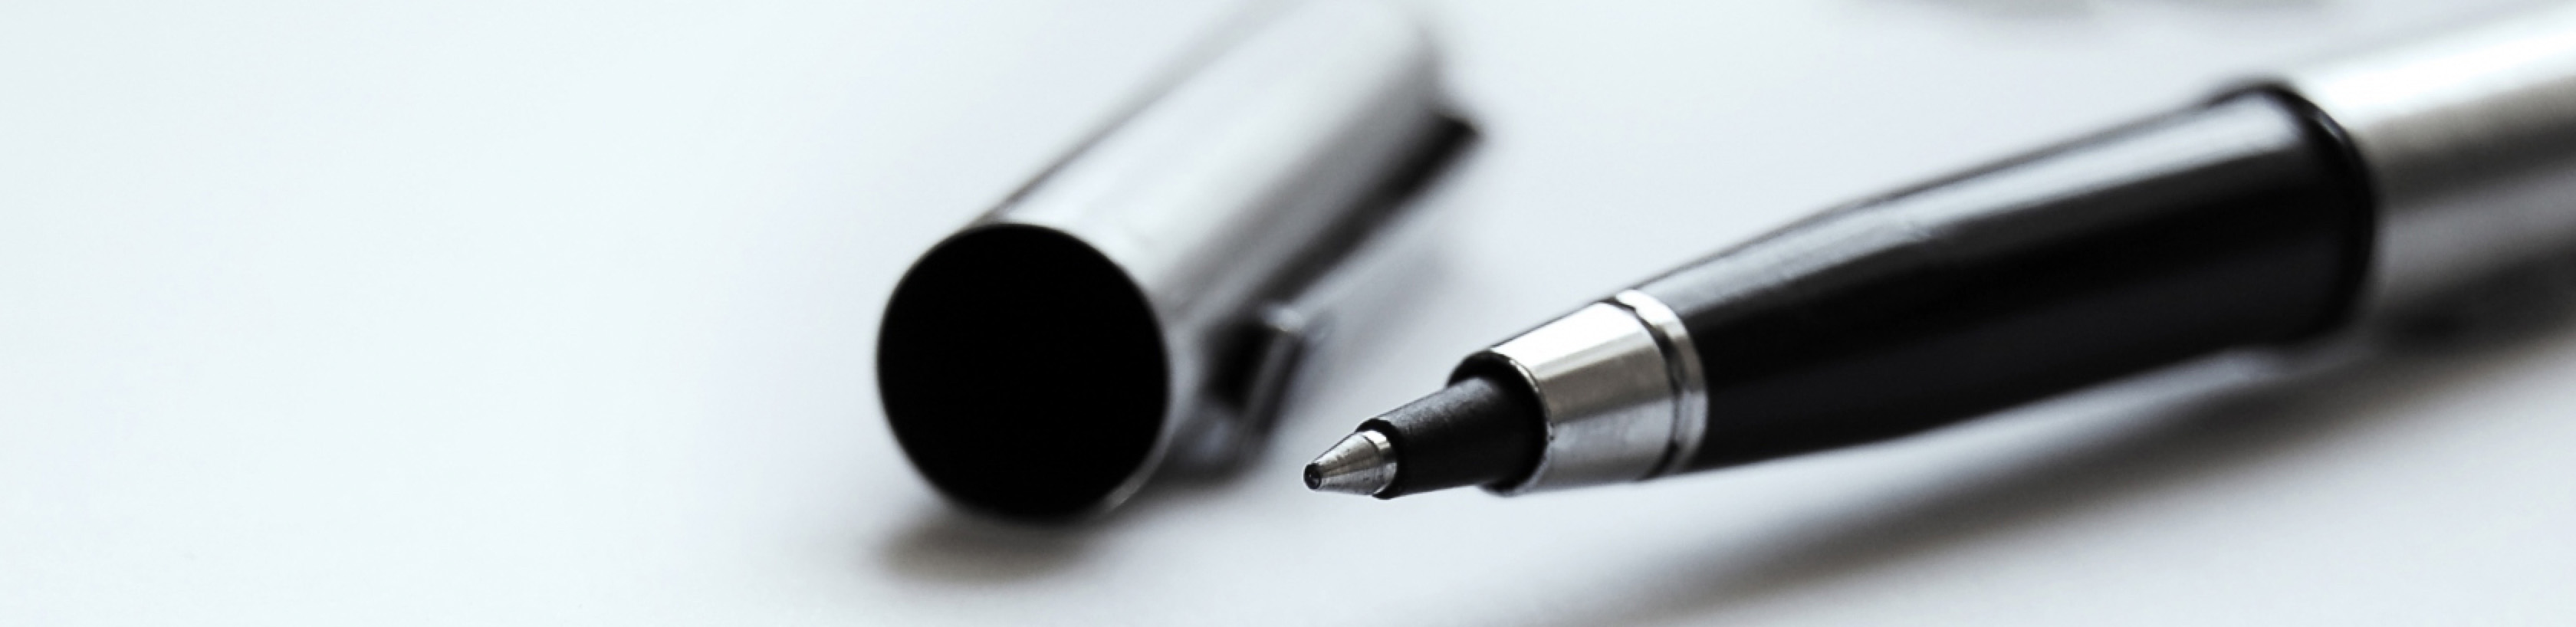 Close-up of open pen and pen cap